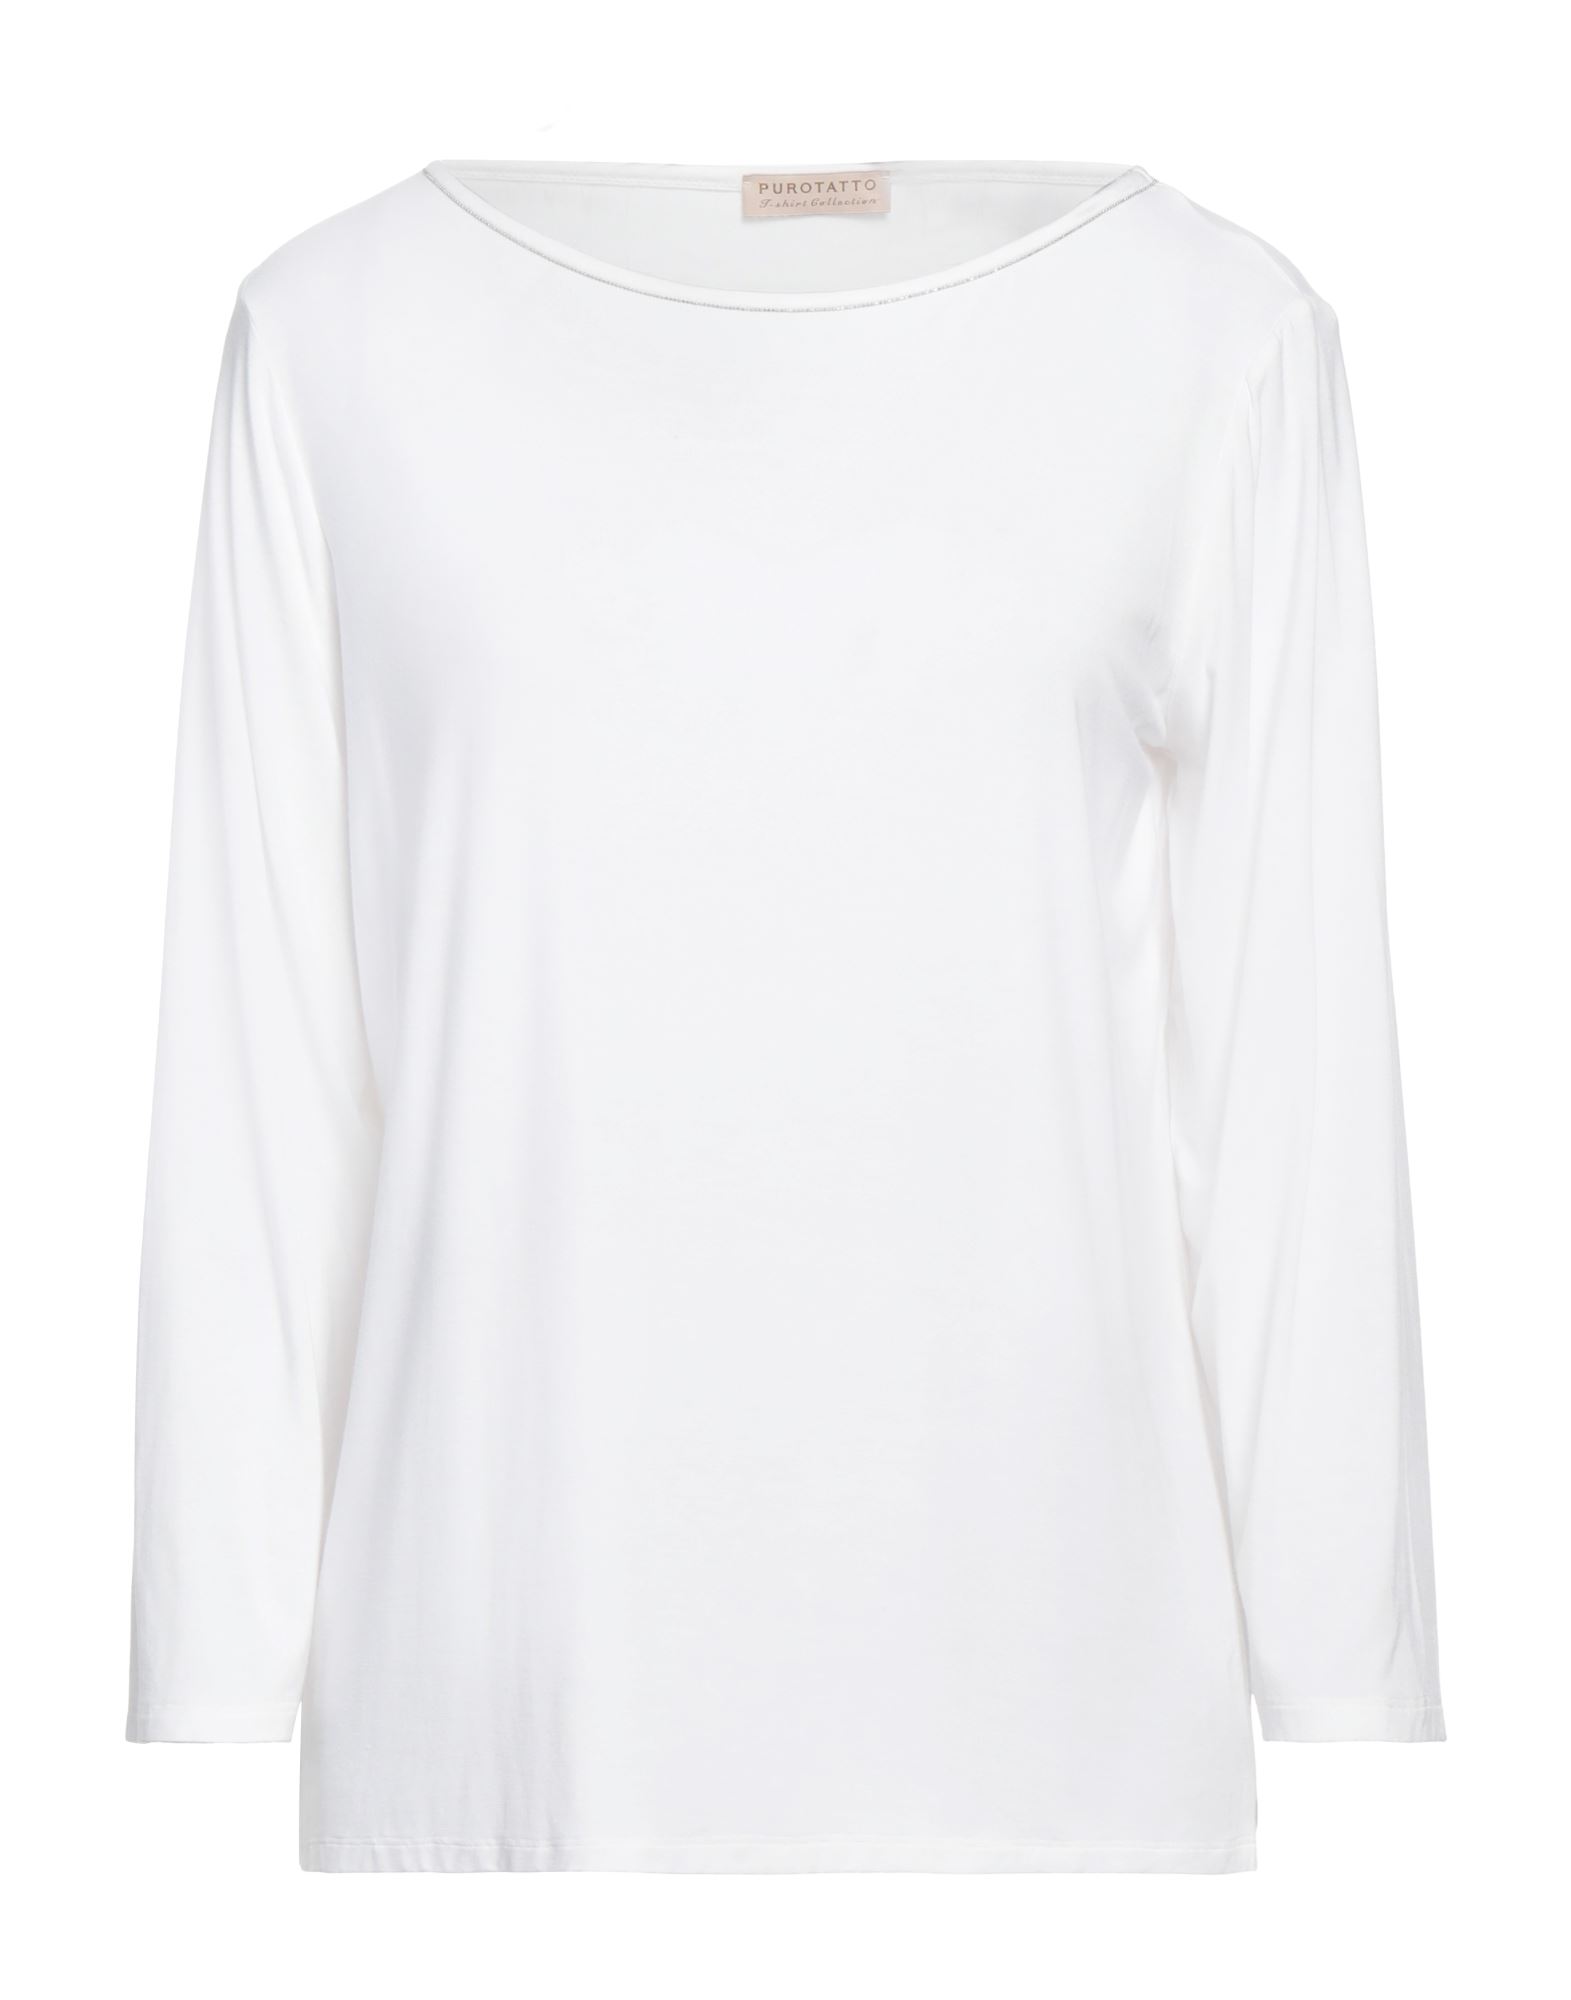 PUROTATTO T-shirts Damen Weiß von PUROTATTO